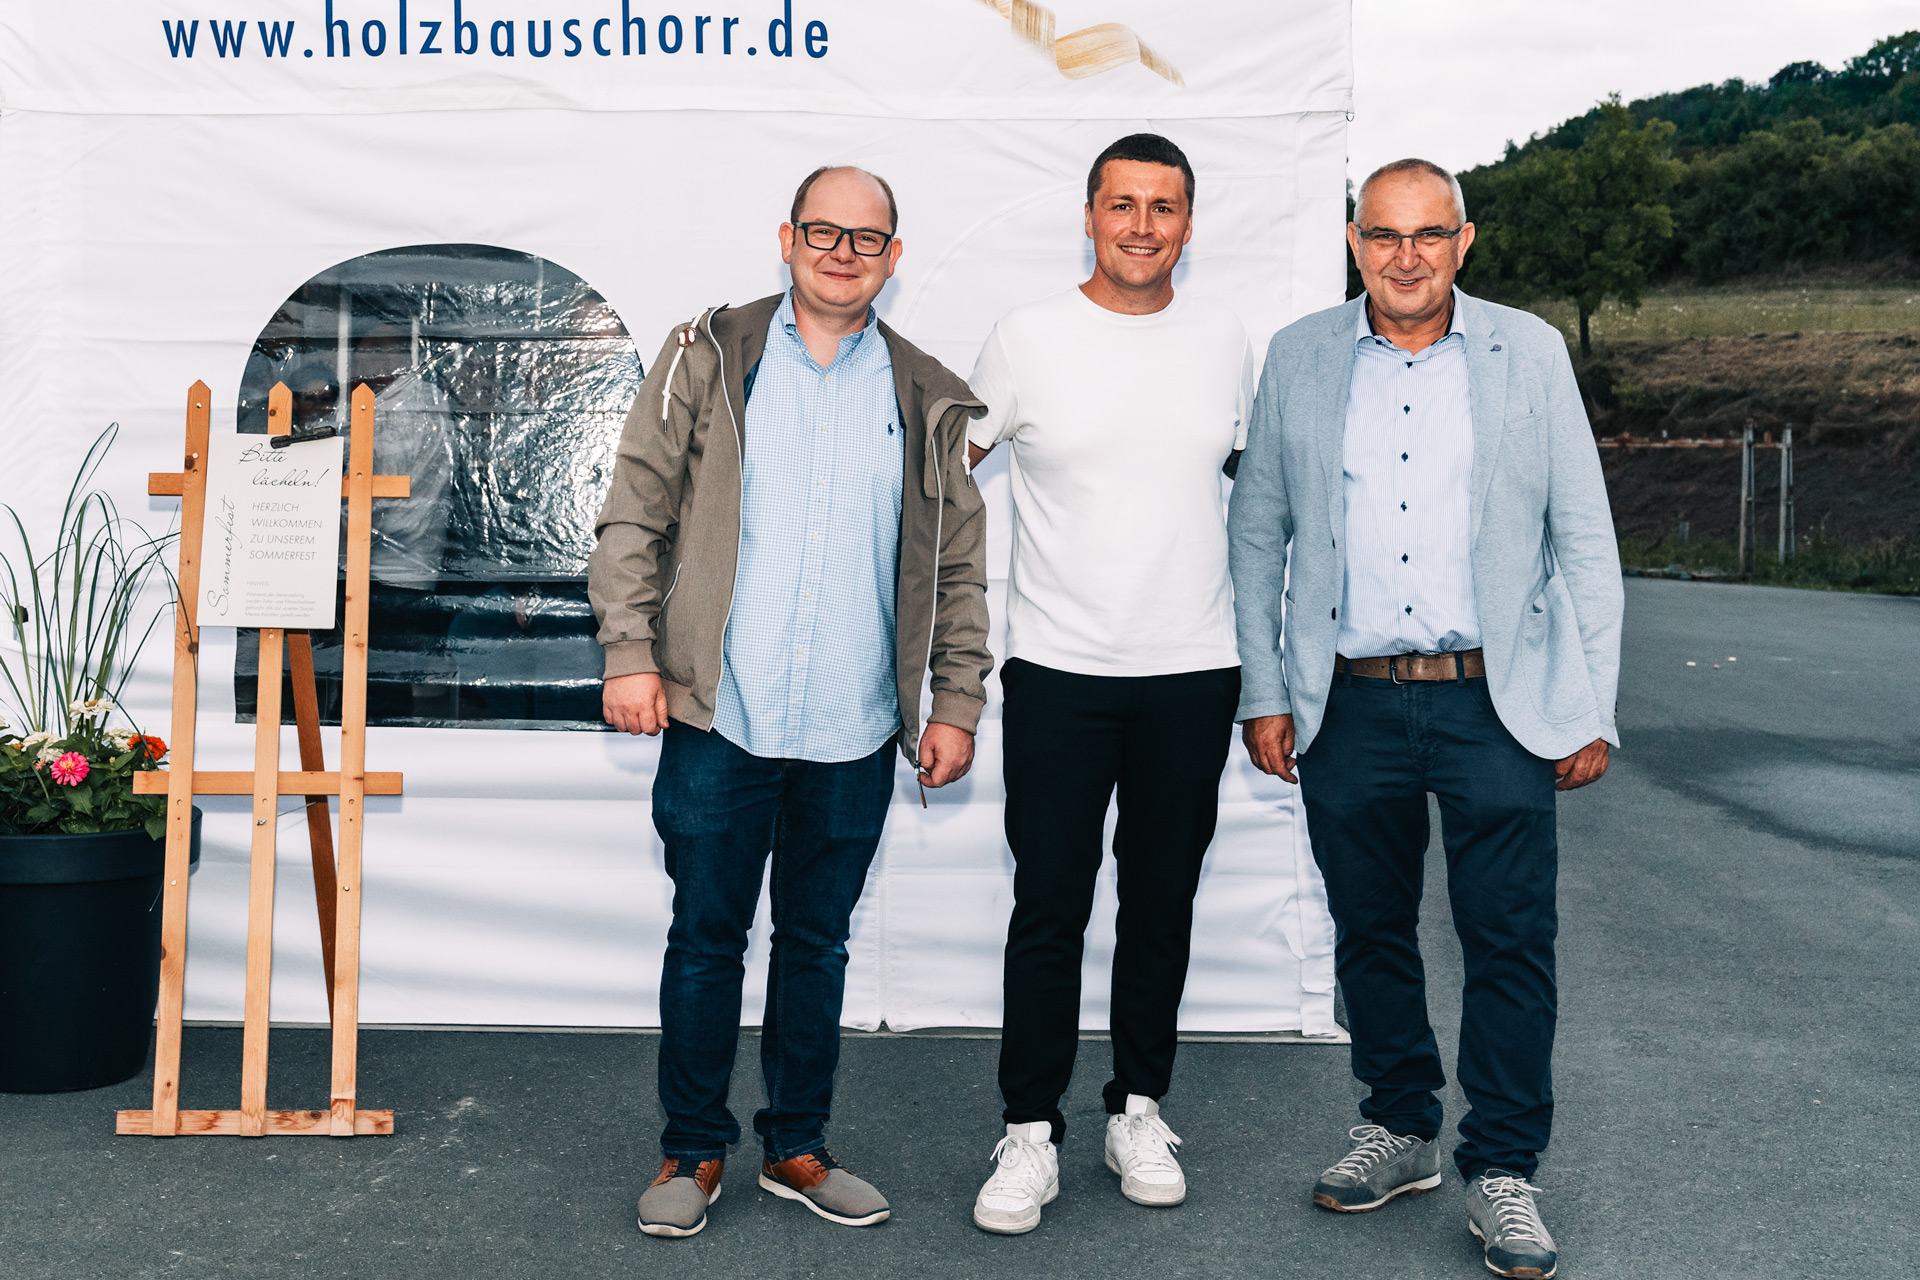 GEYER ARTWORX & Holzbau Schorr